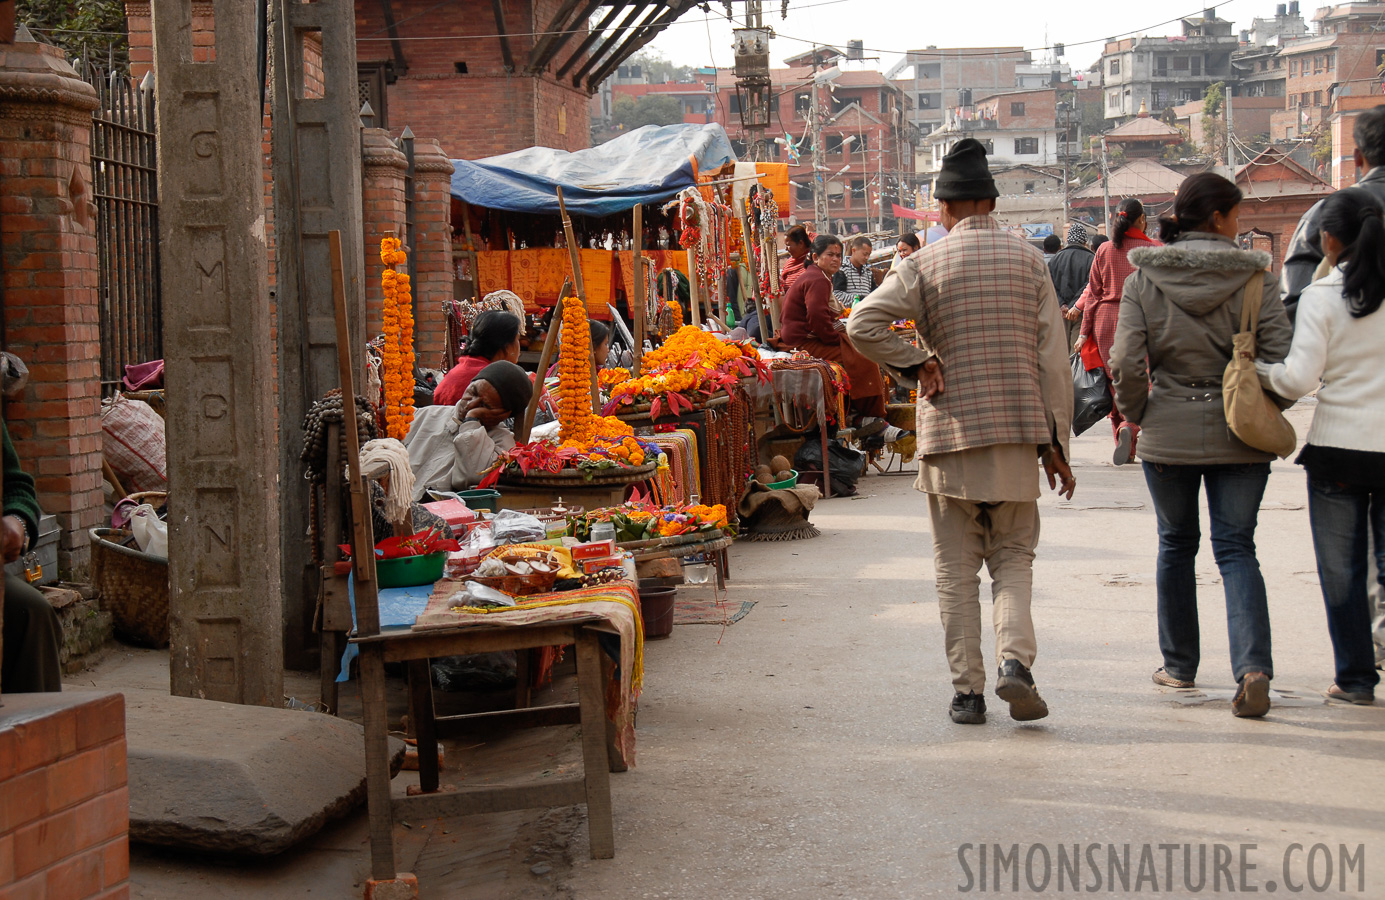 Kathmandu [50 mm, 1/160 Sek. bei f / 7.1, ISO 200]